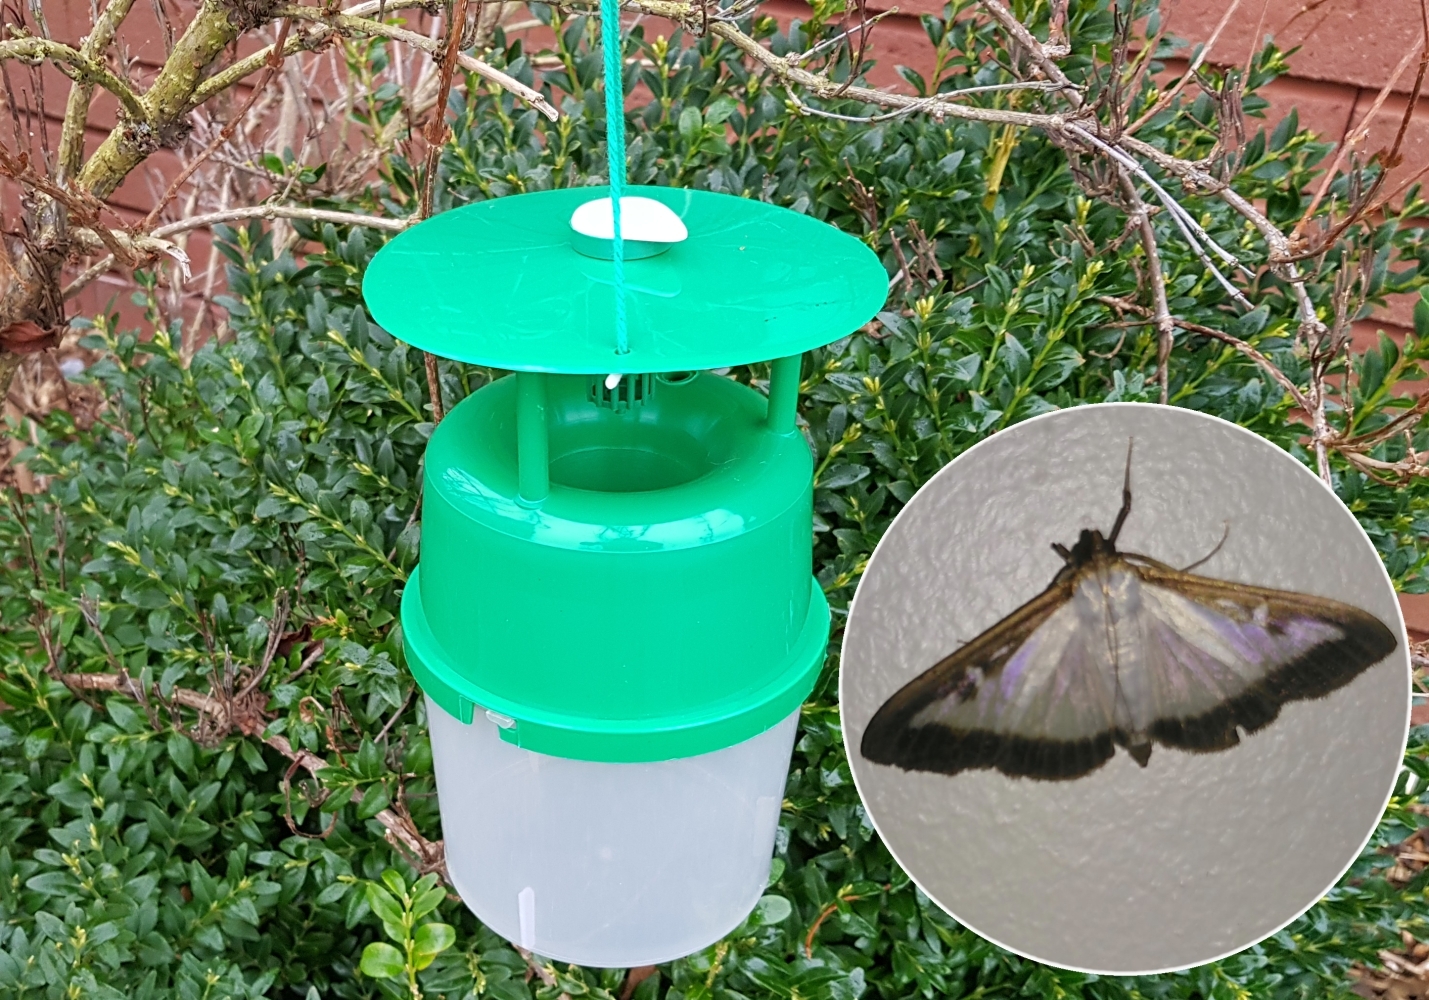 Box Tree Moth Trap